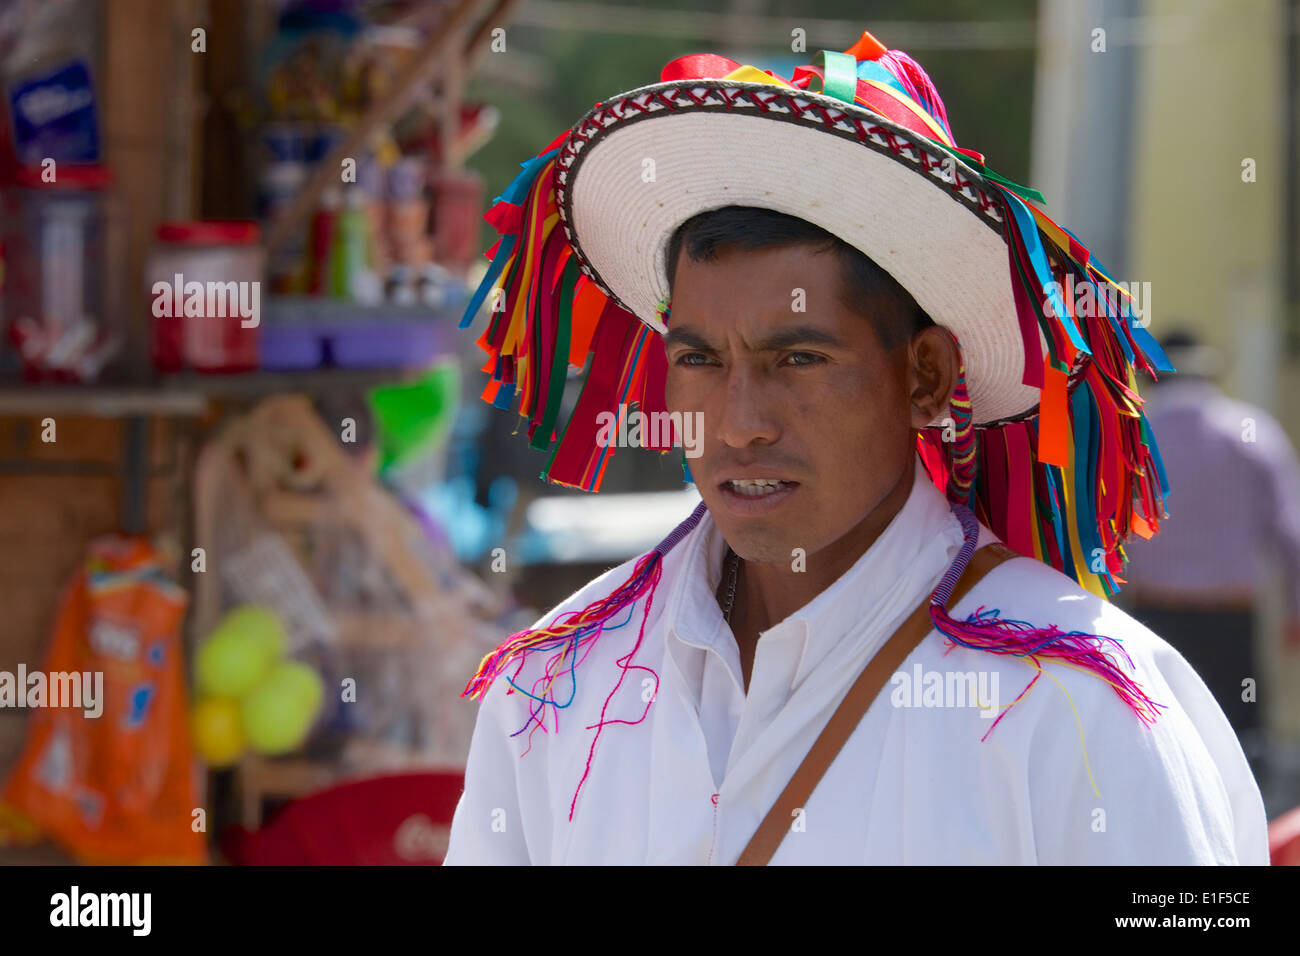 Retrato oficial de llevar traje tradicional mercado dominical de San Juan Chamula Chiapas México Foto de stock